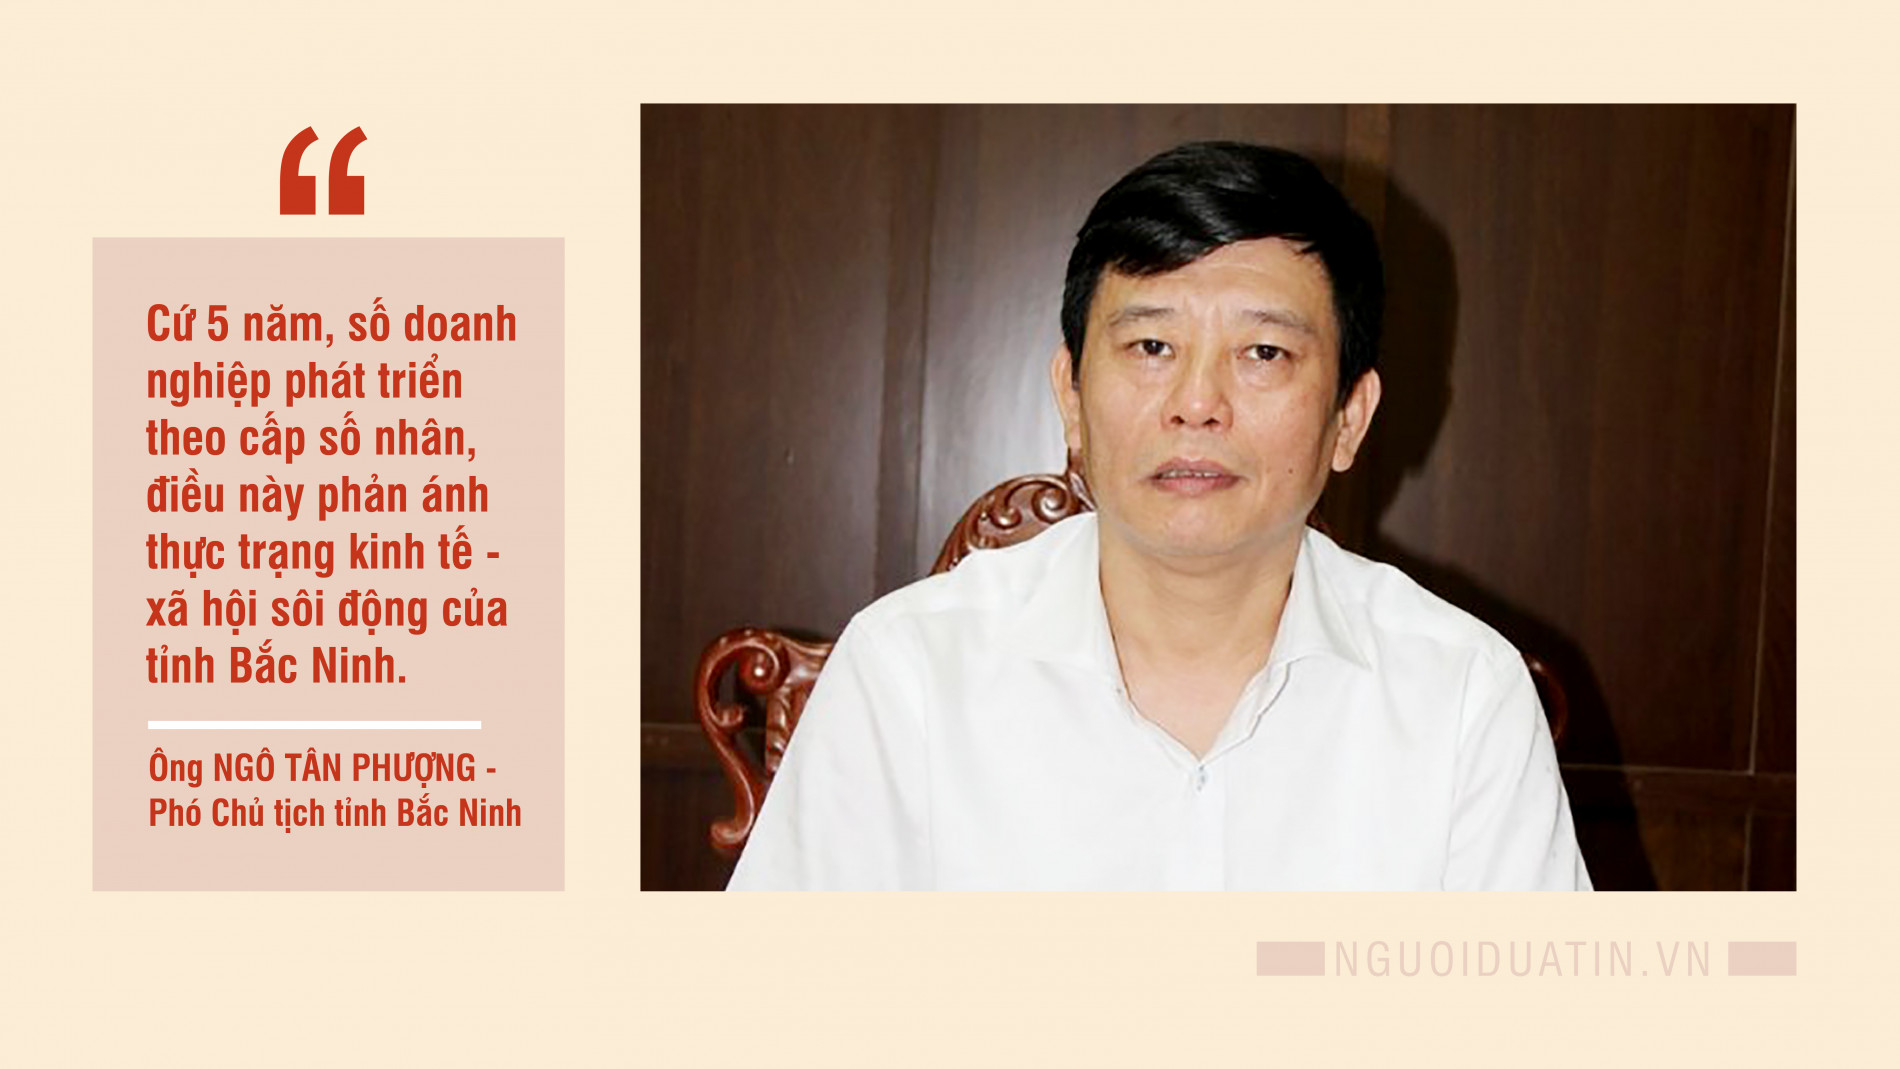 Kinh tế vĩ mô - PCT tỉnh Bắc Ninh chia sẻ về 'hành trang' để khôi phục kinh tế (Hình 4).